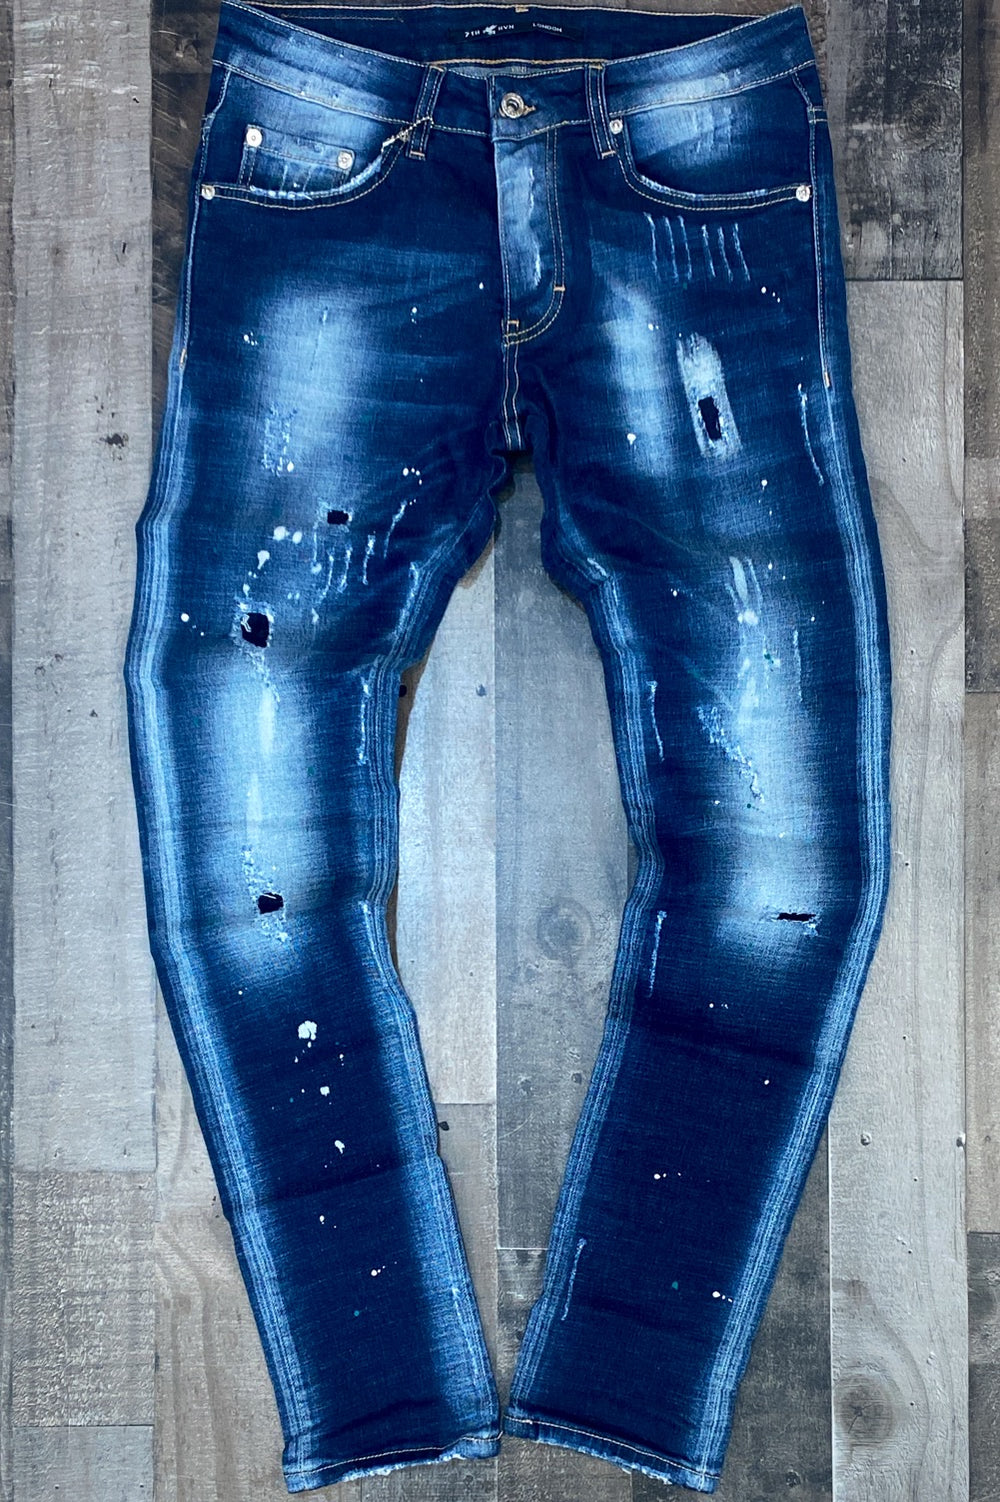 7th hvn- paint splattered denim jeans (white / green)